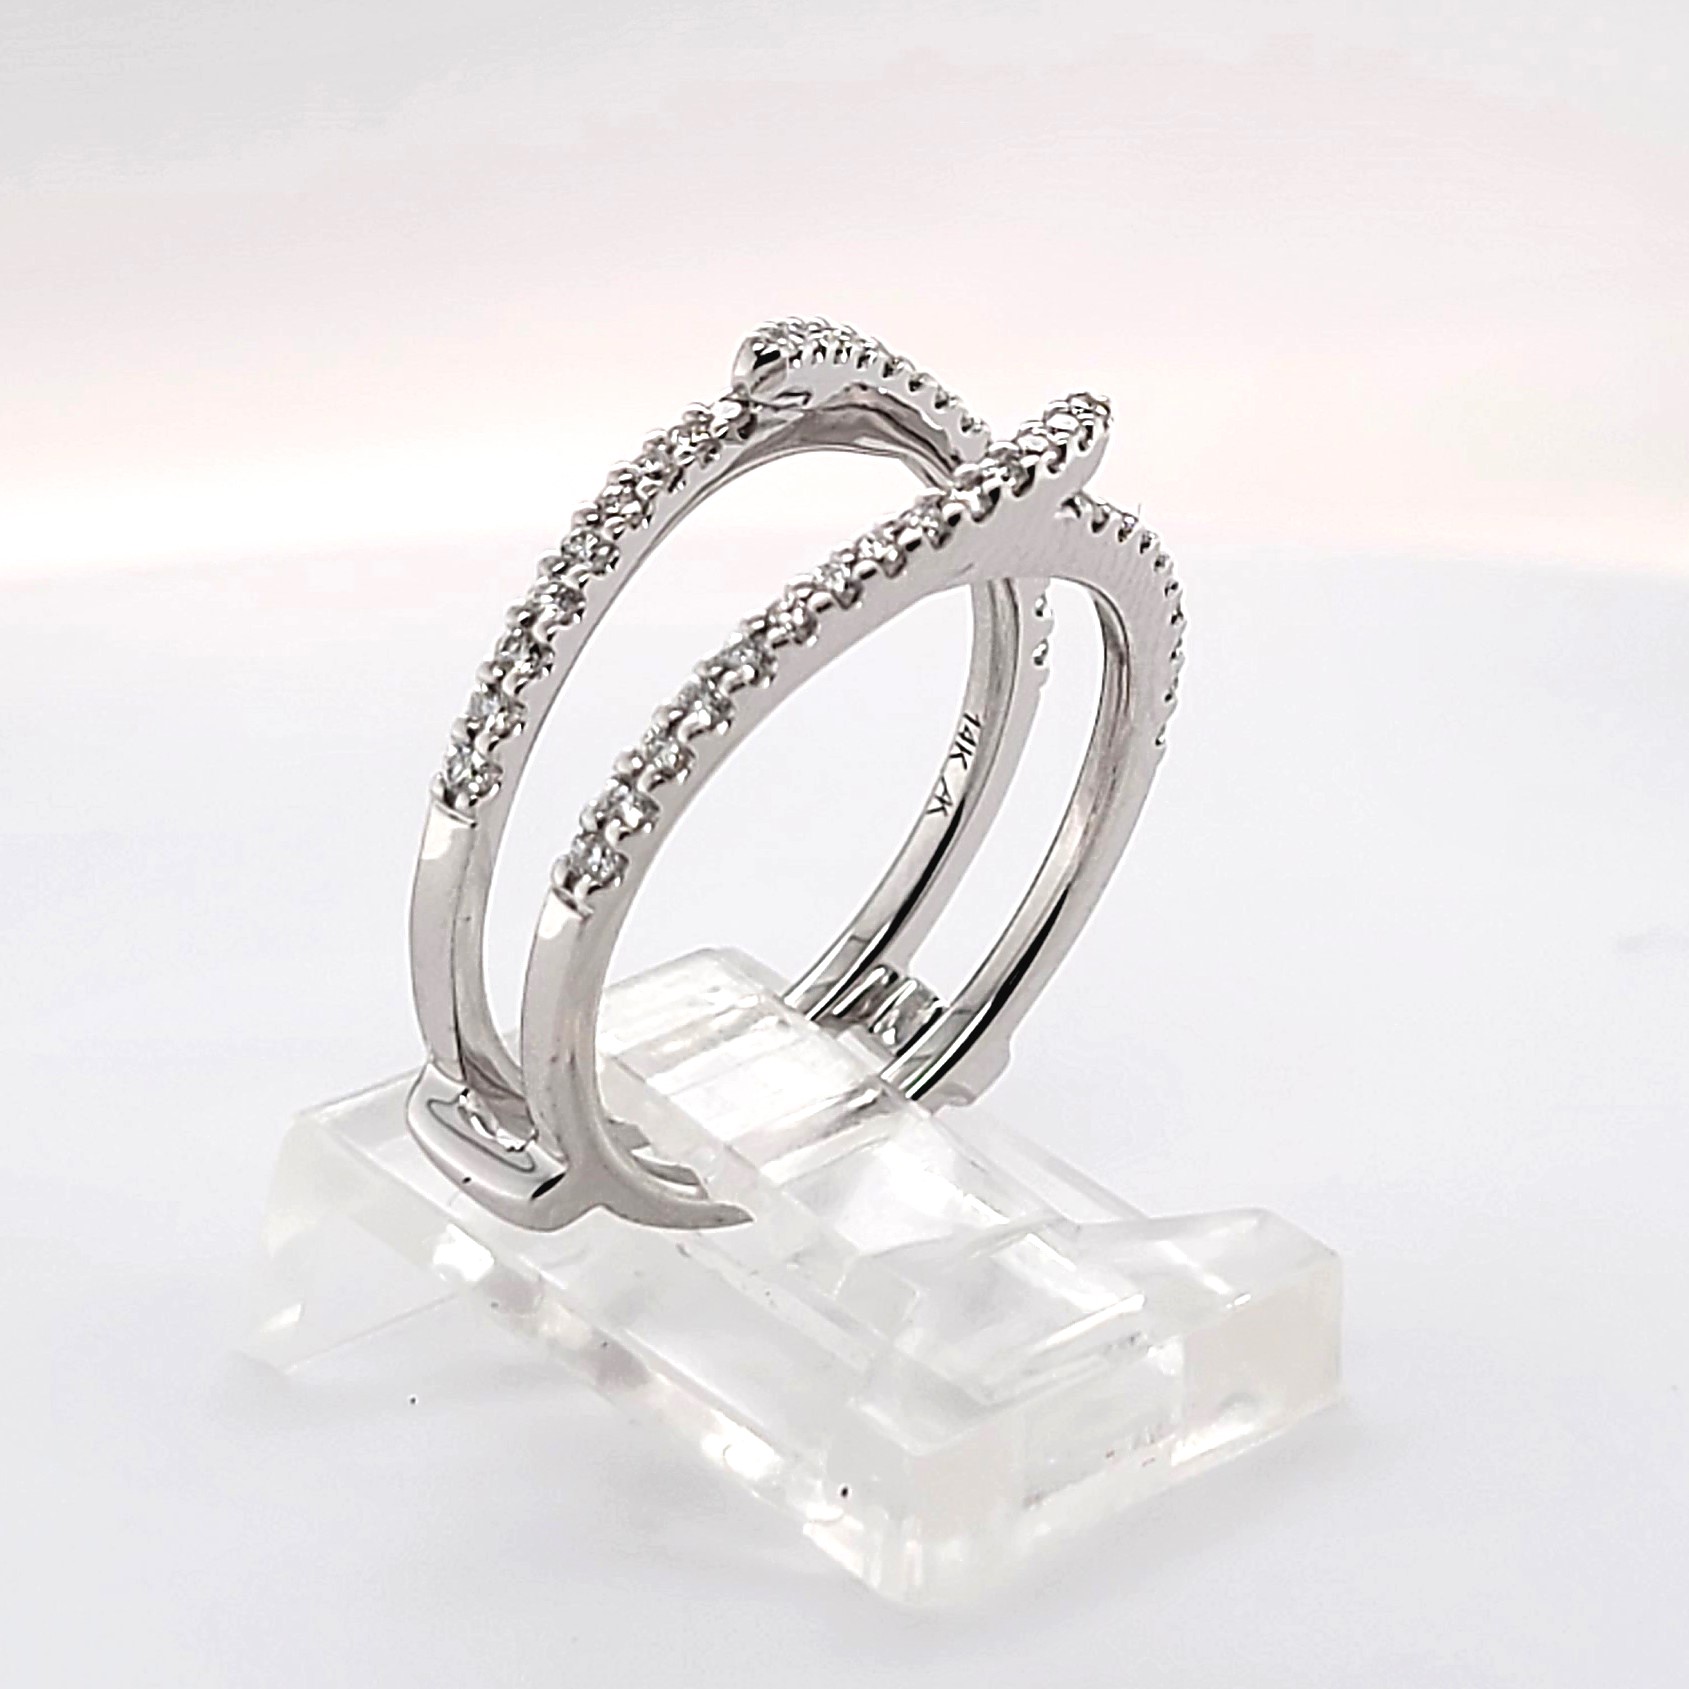 4 Stone Diamond Ring | Shining Diamonds®